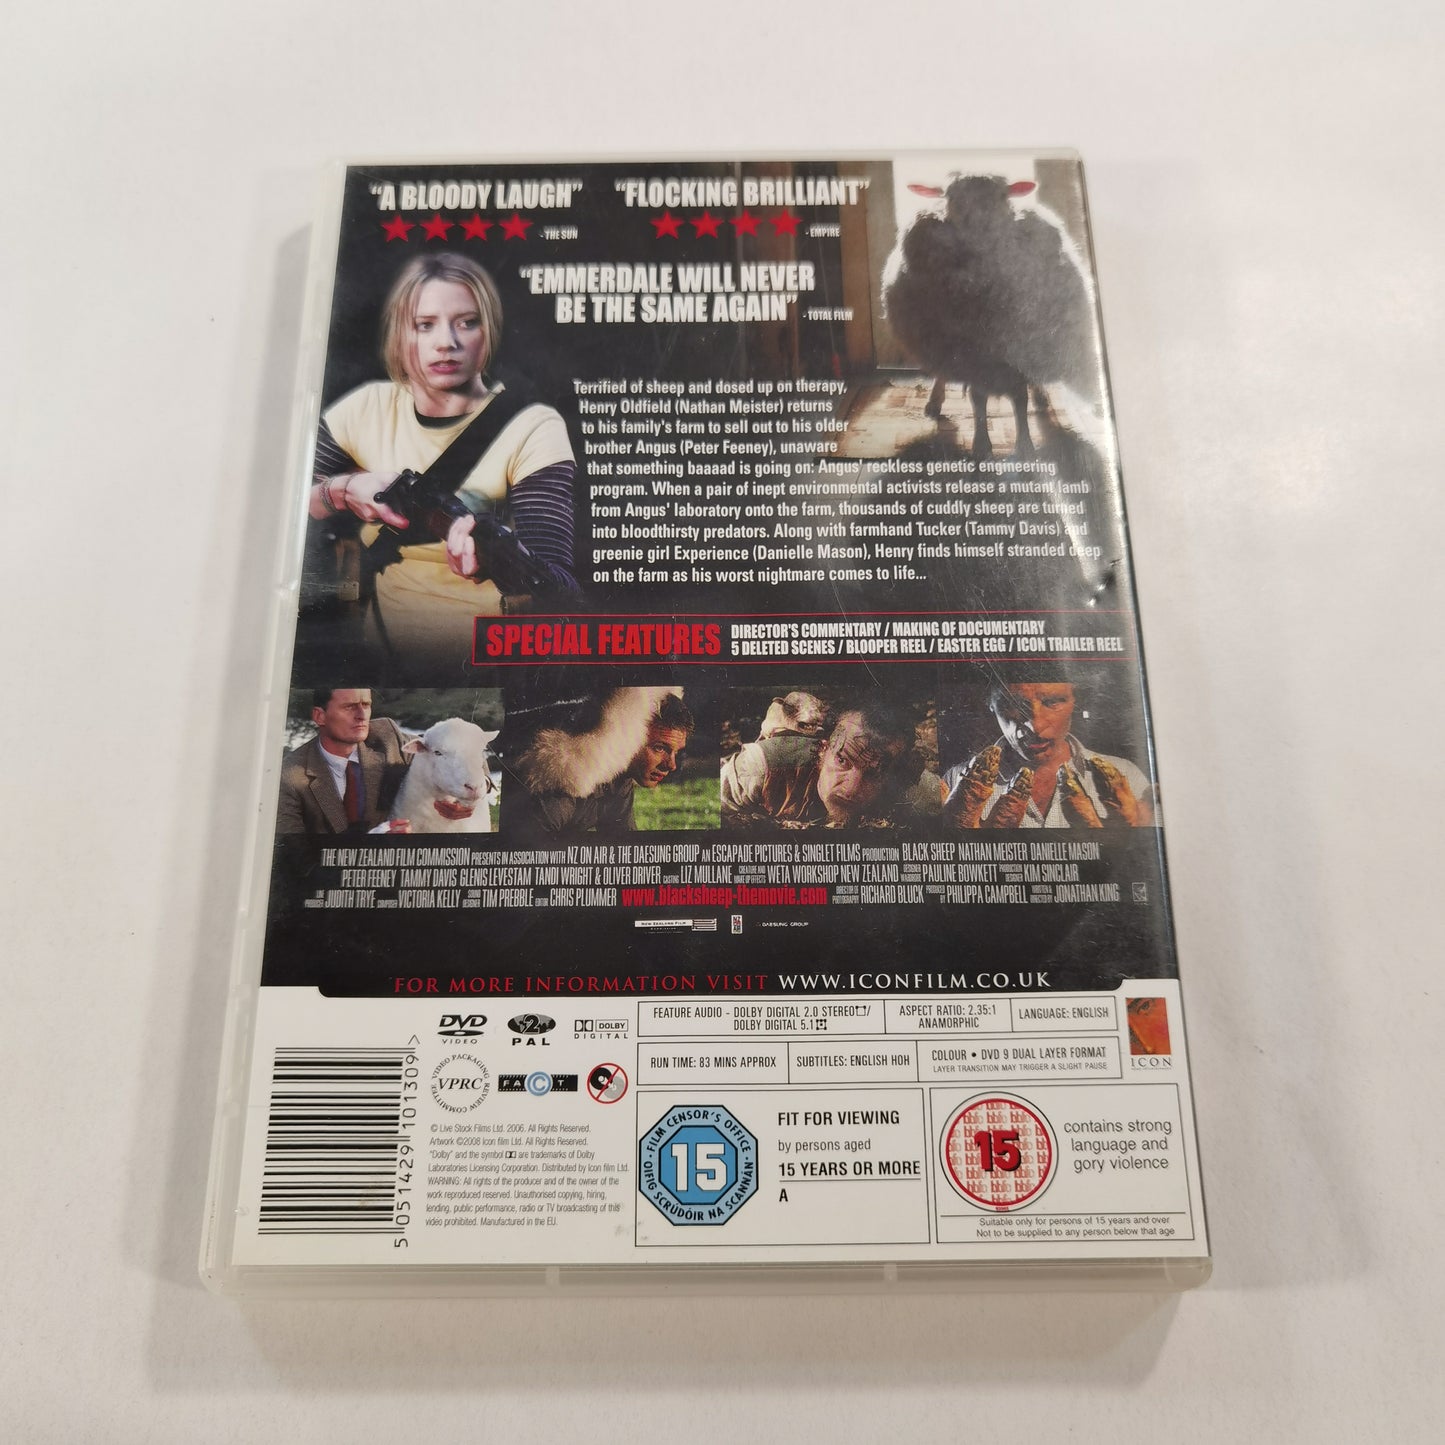 Black Sheep (2006) - DVD UK 2008